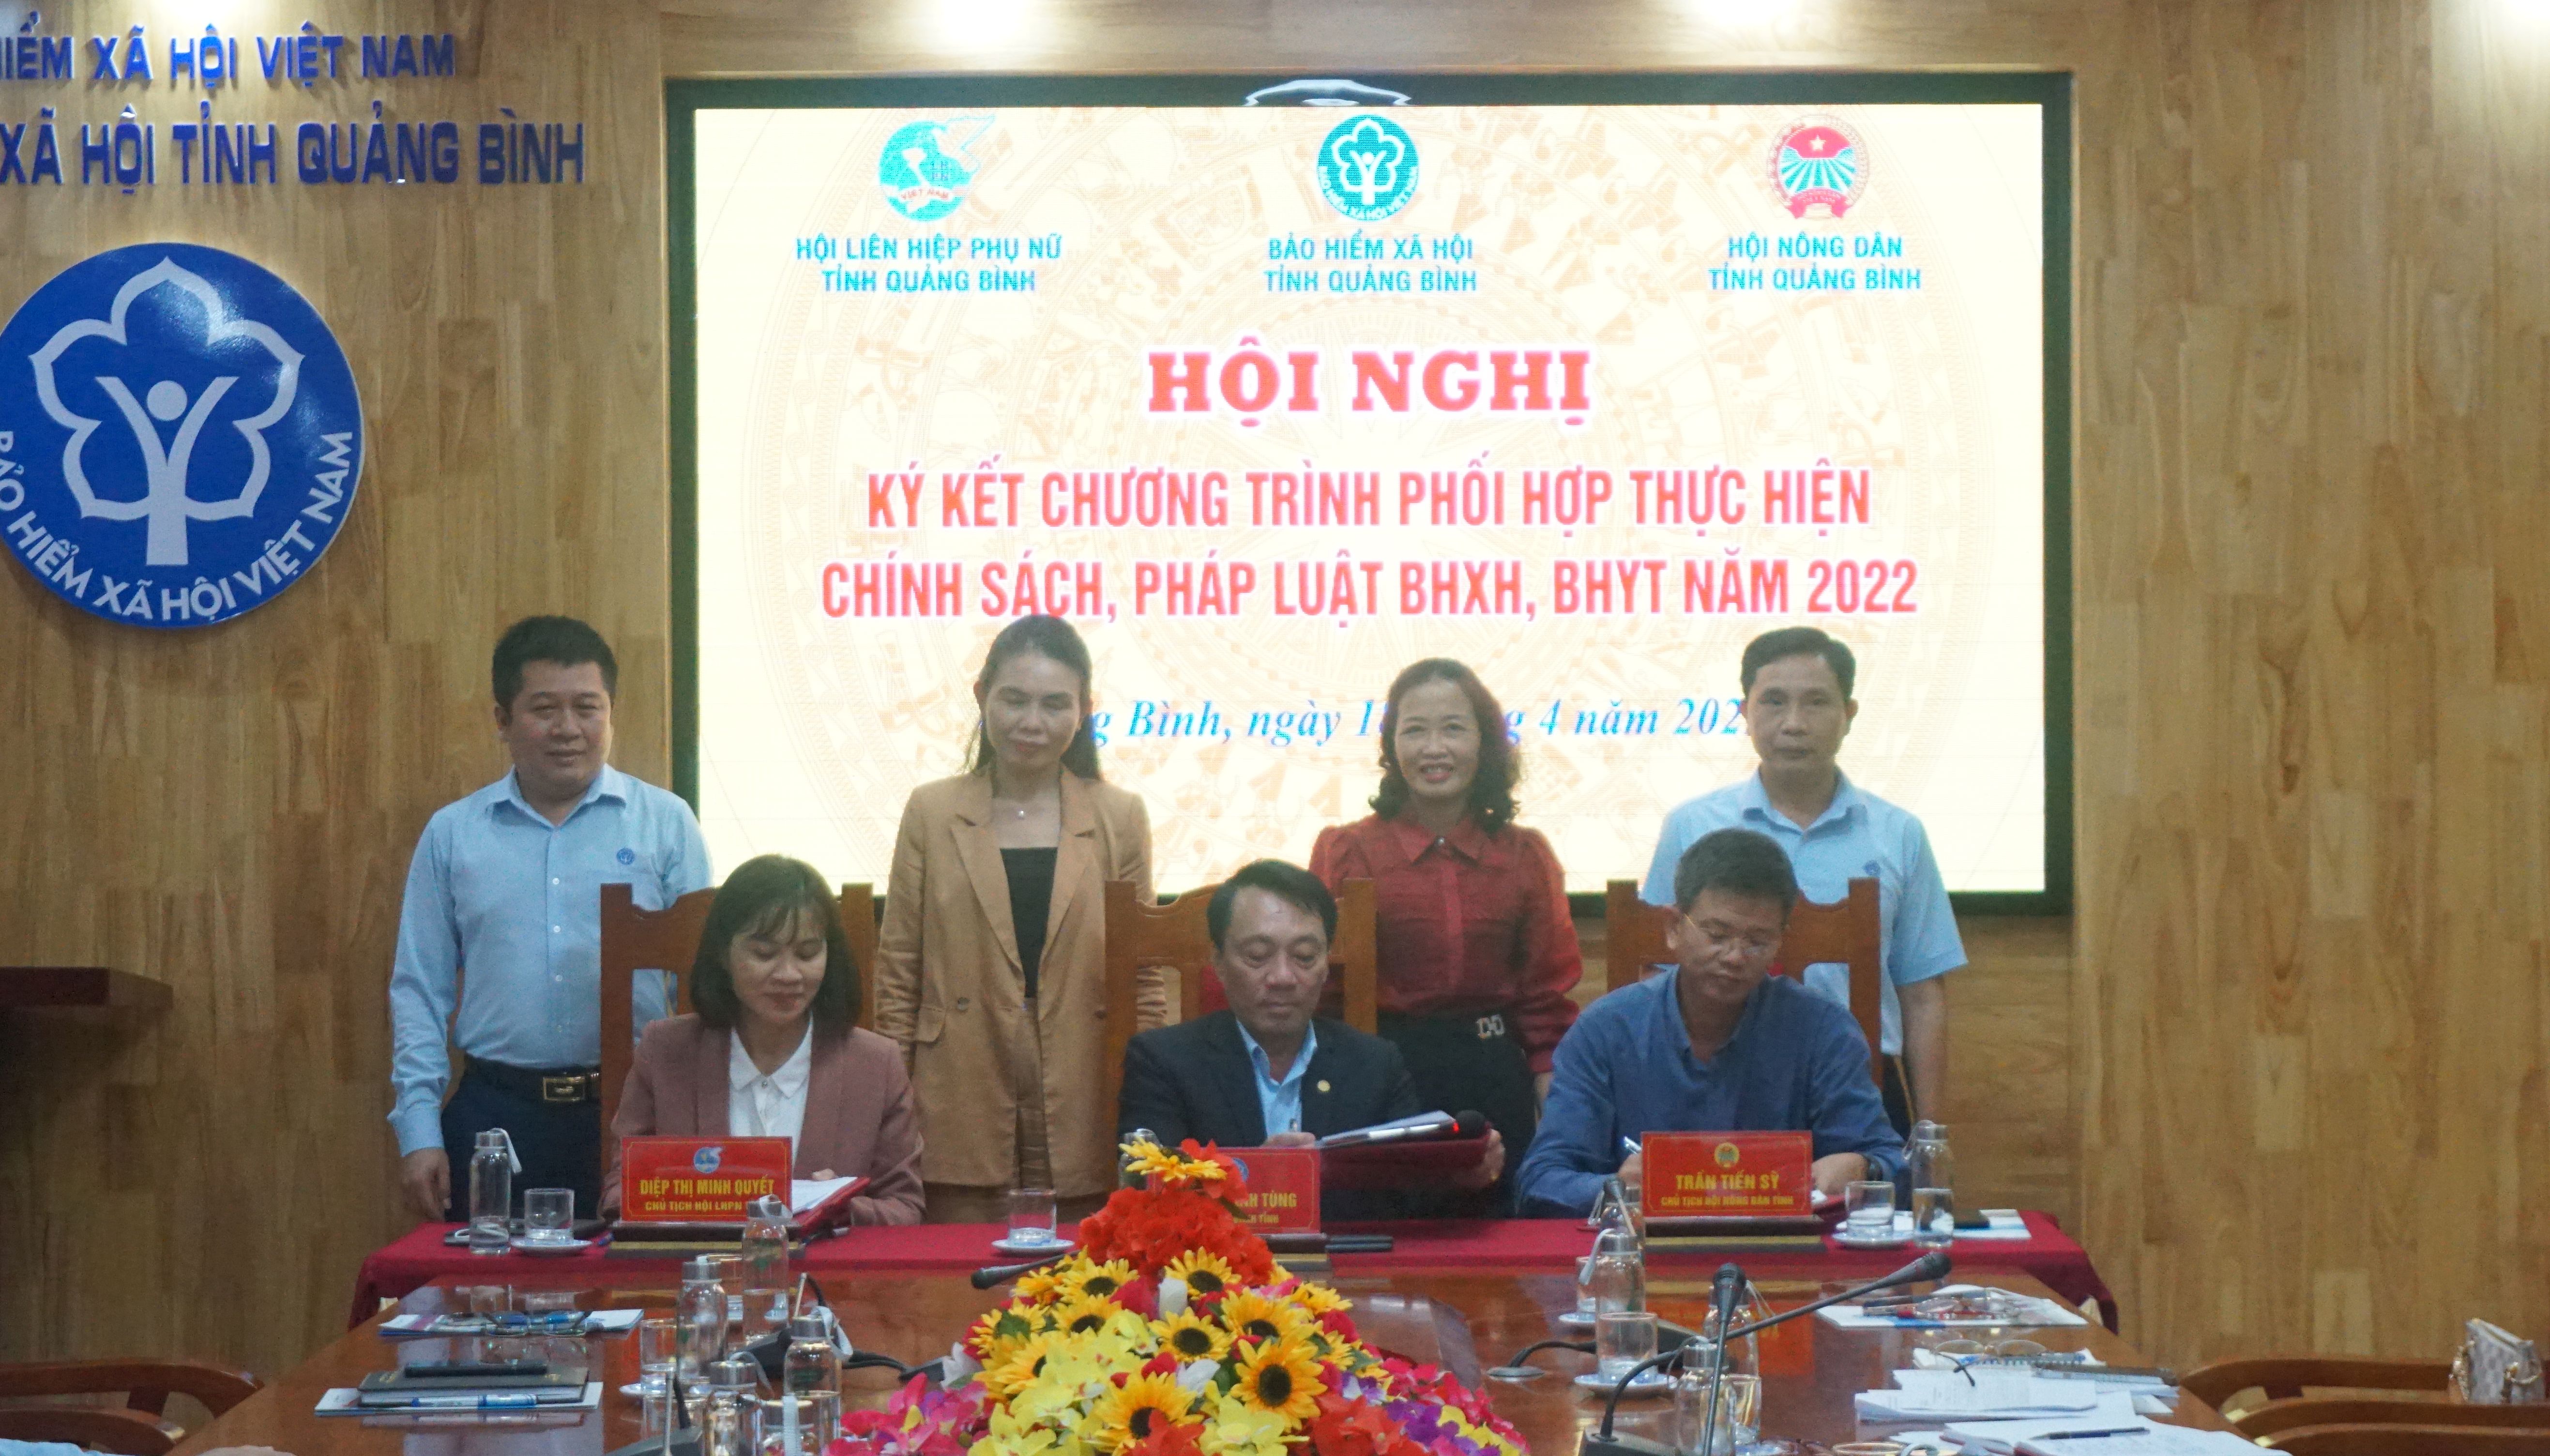 : BHXH và Hội LHPN tỉnh, Hội Nông dân tỉnh ký kết chương trình phối hợp công tác BHXH, BHYT năm 2022.